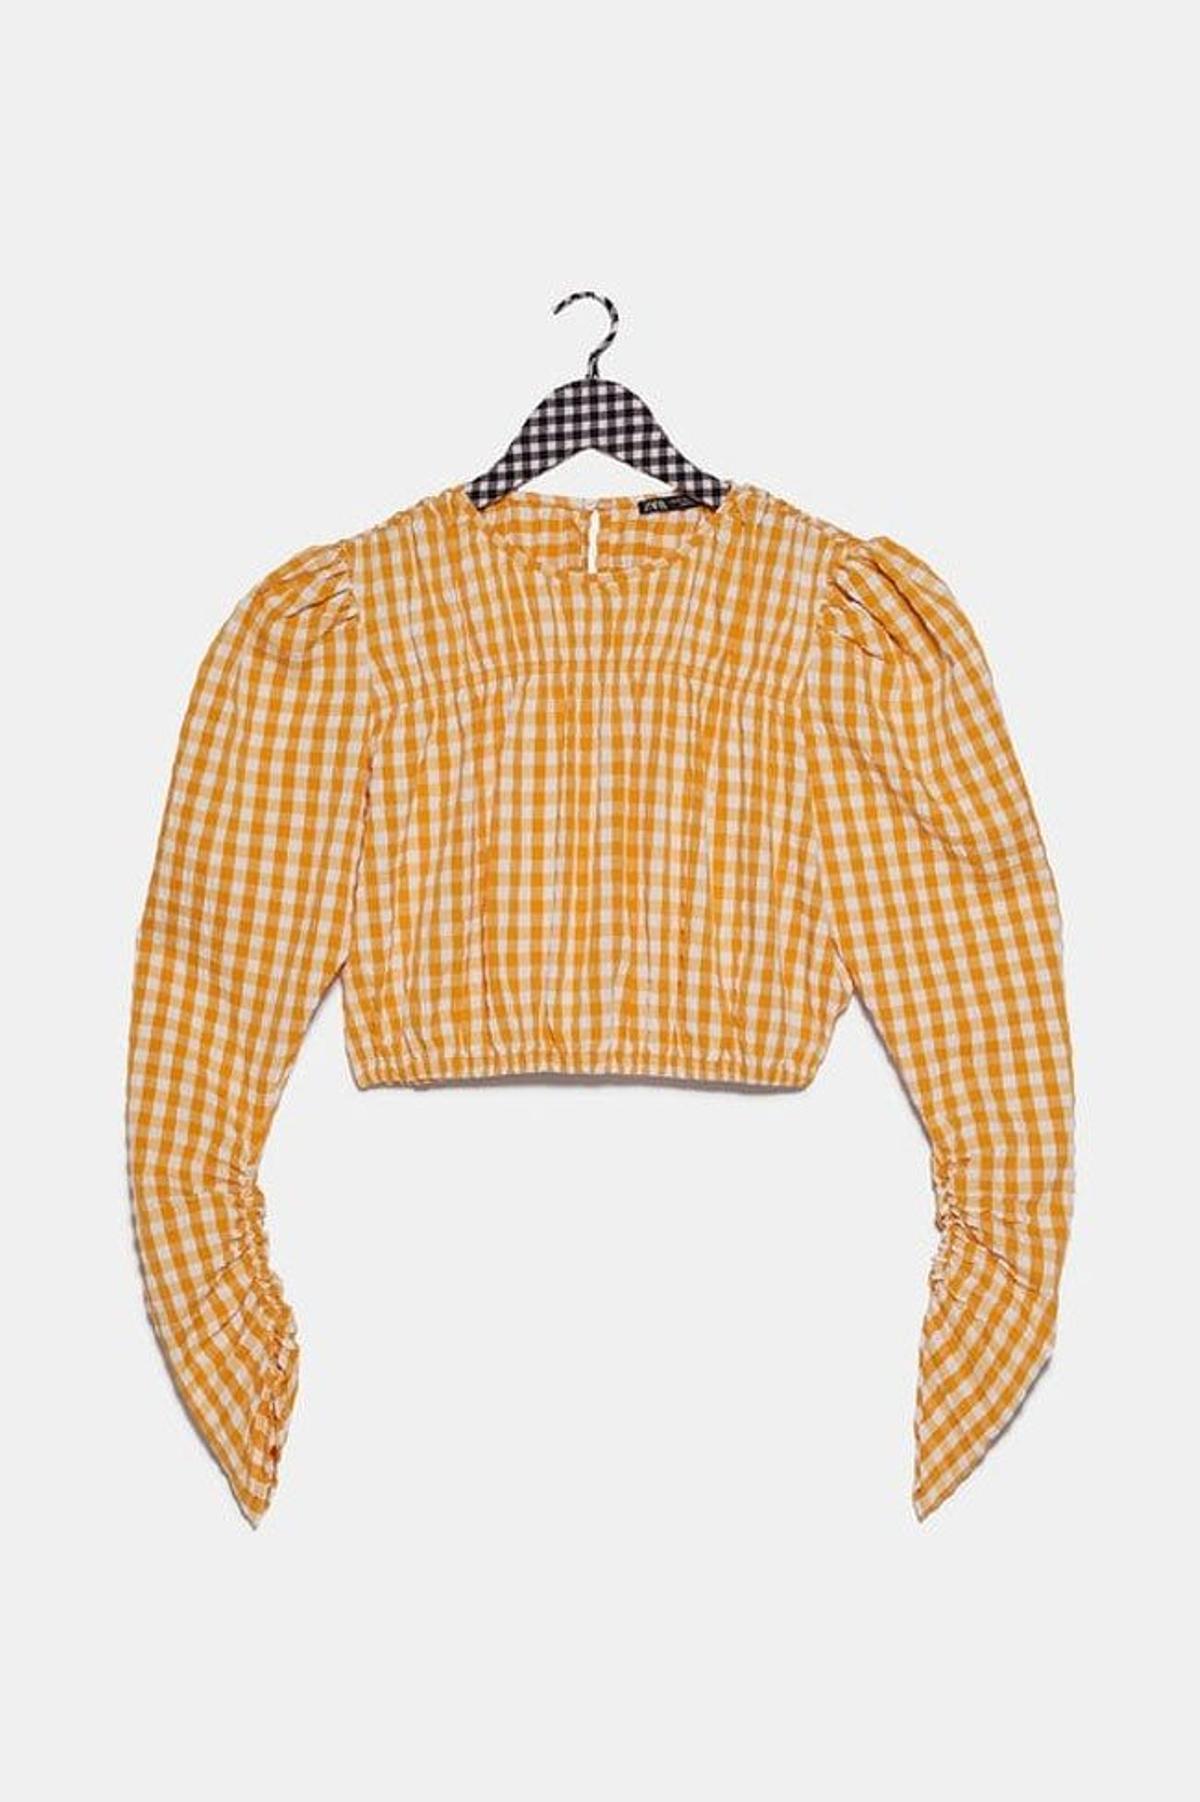 Blusa de cuadro vichy naranja claro y blanco de Zara. (Precio: 22, 95 euros)